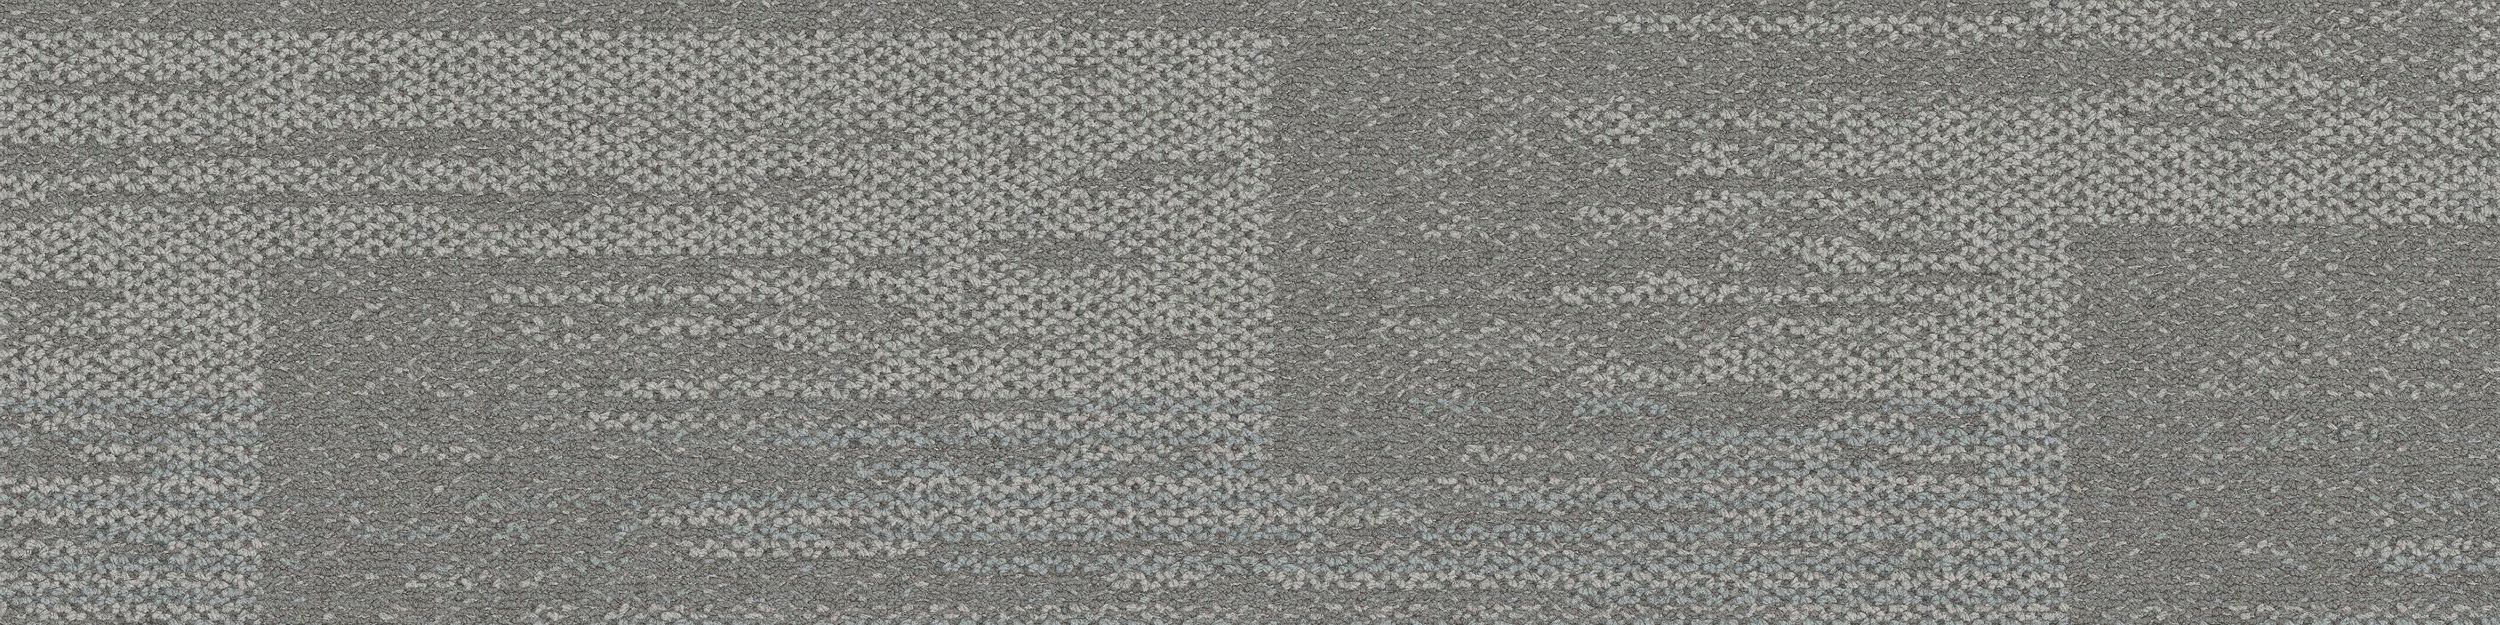 AE311 Carpet Tile In Mist image number 2